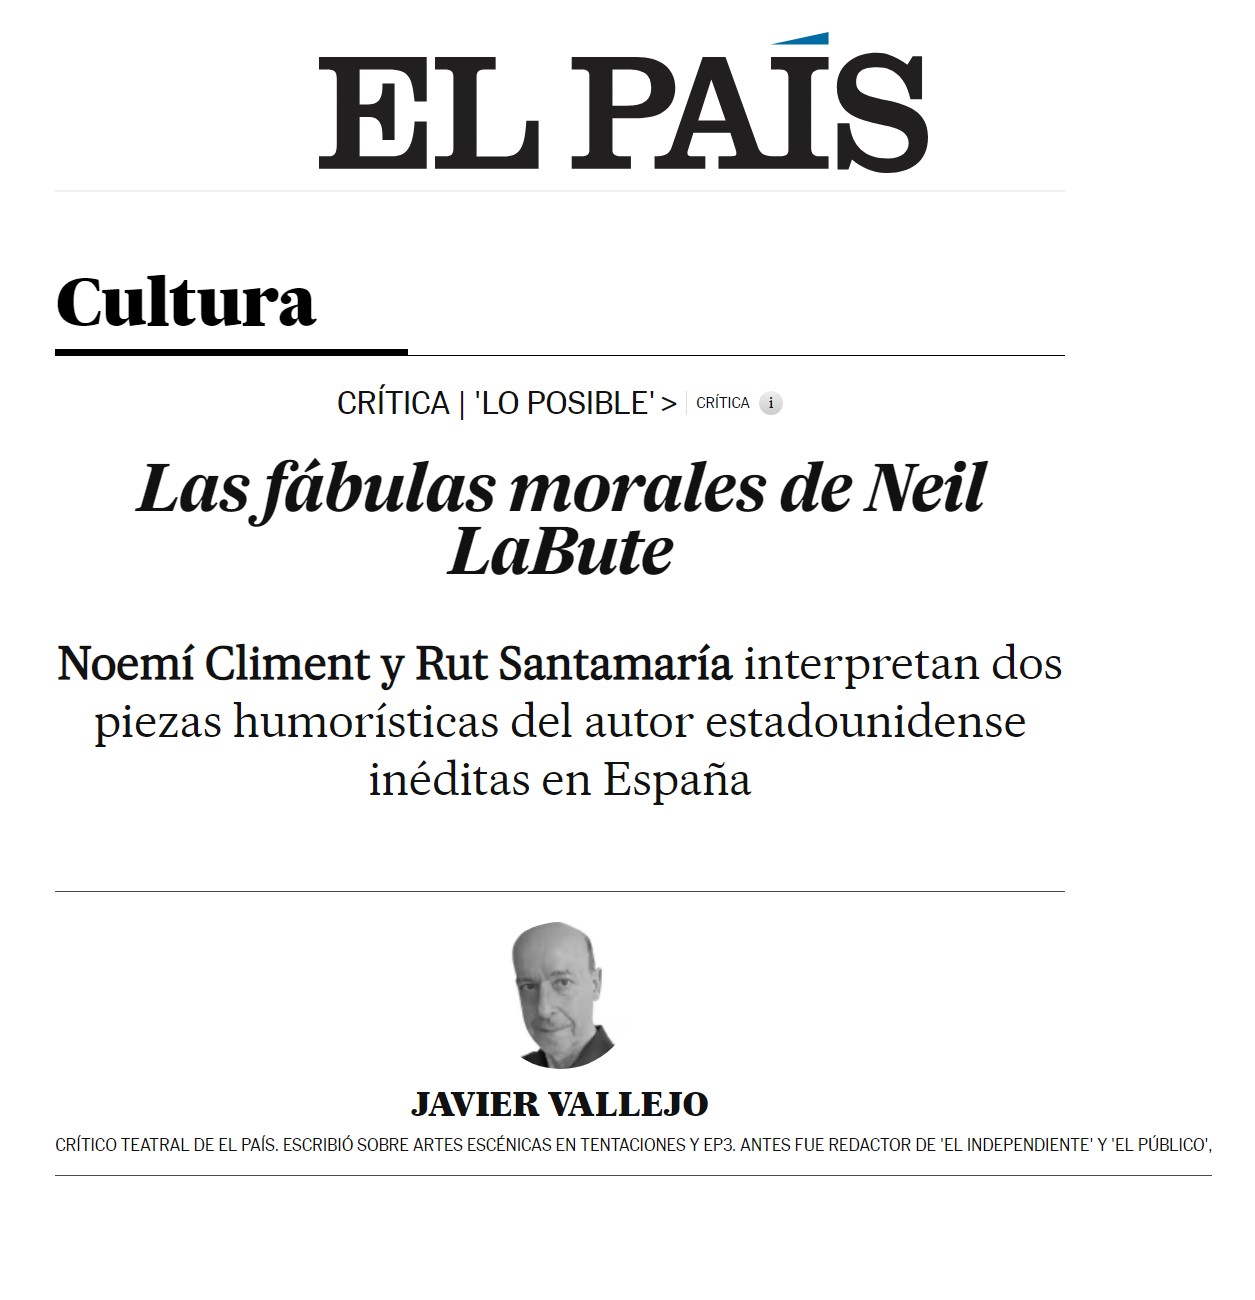 Lo Posible - El País